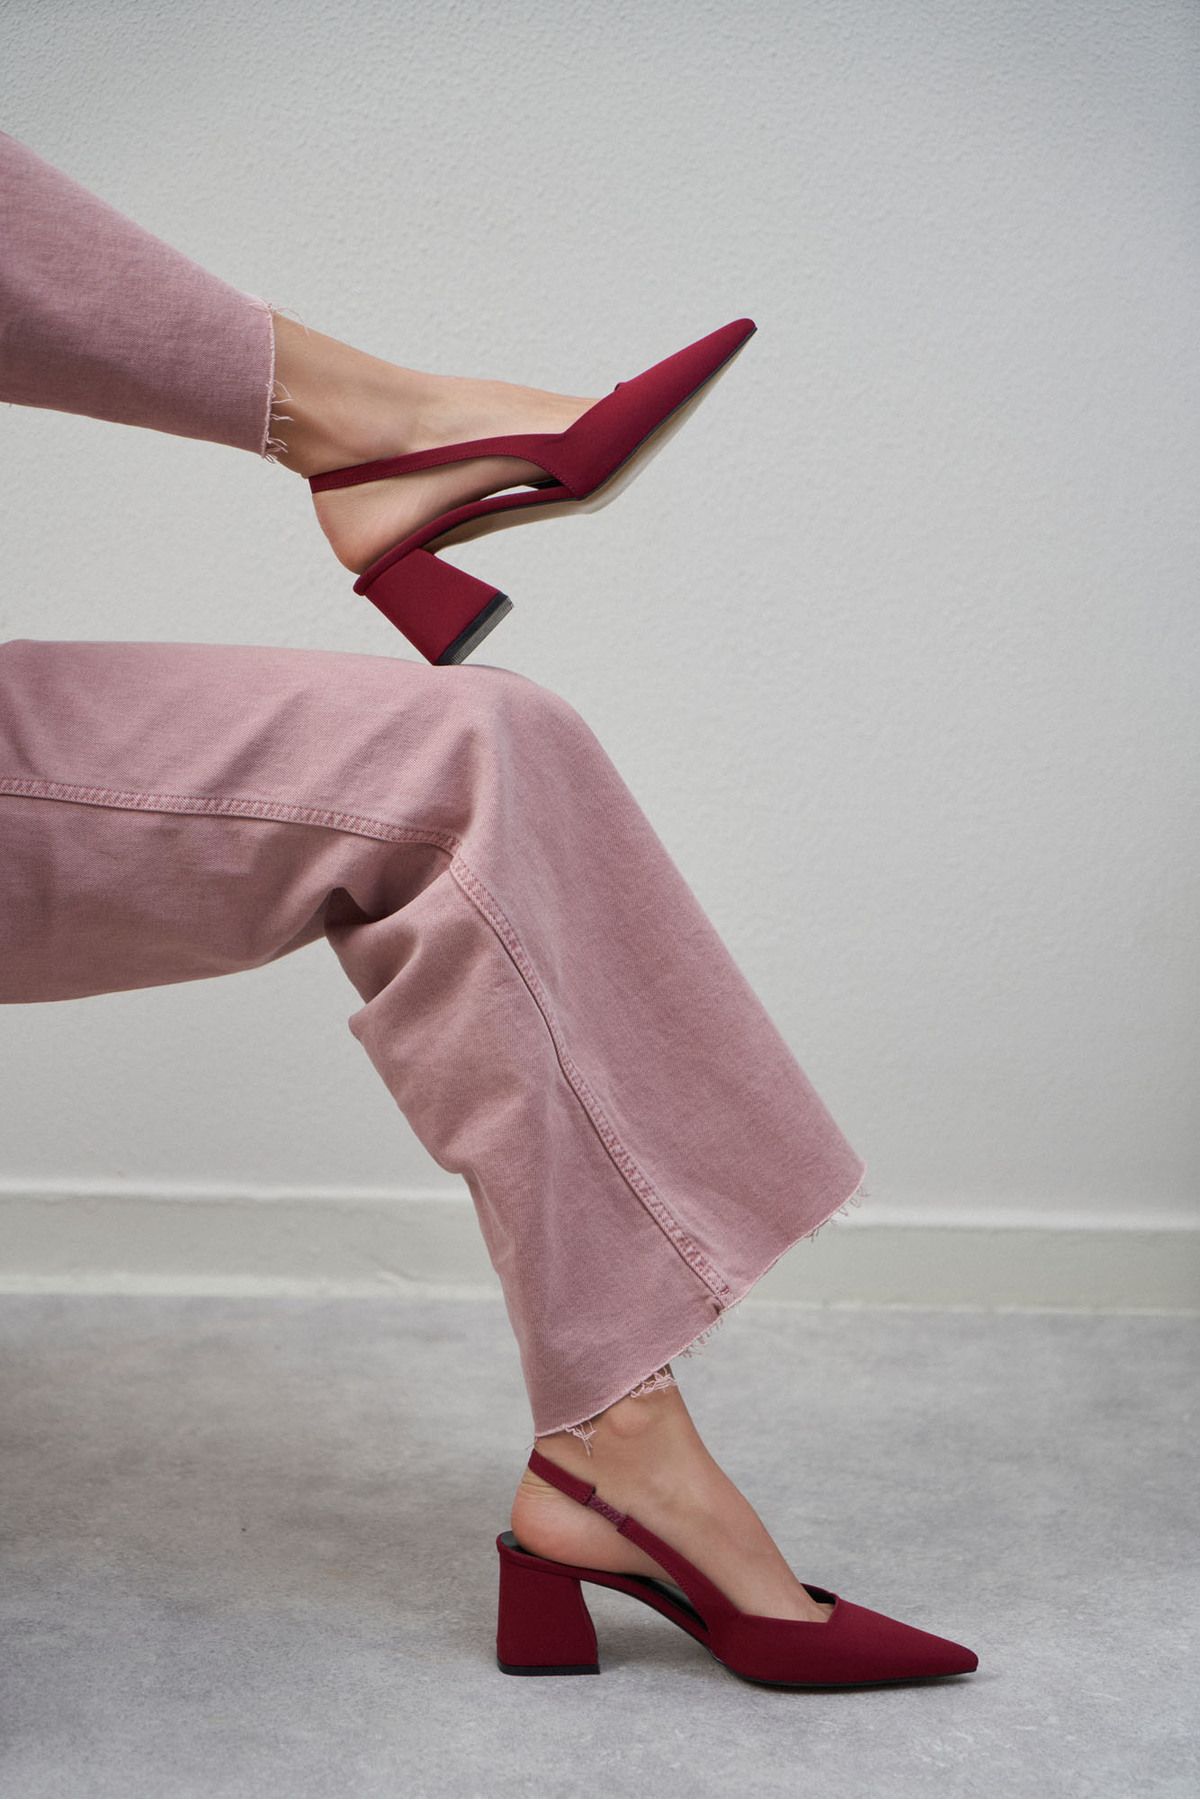 NİŞANTAŞI SHOES Trudy Bordo Mat Saten Bilek Bağlı Kadın Topuklu Ayakkabı